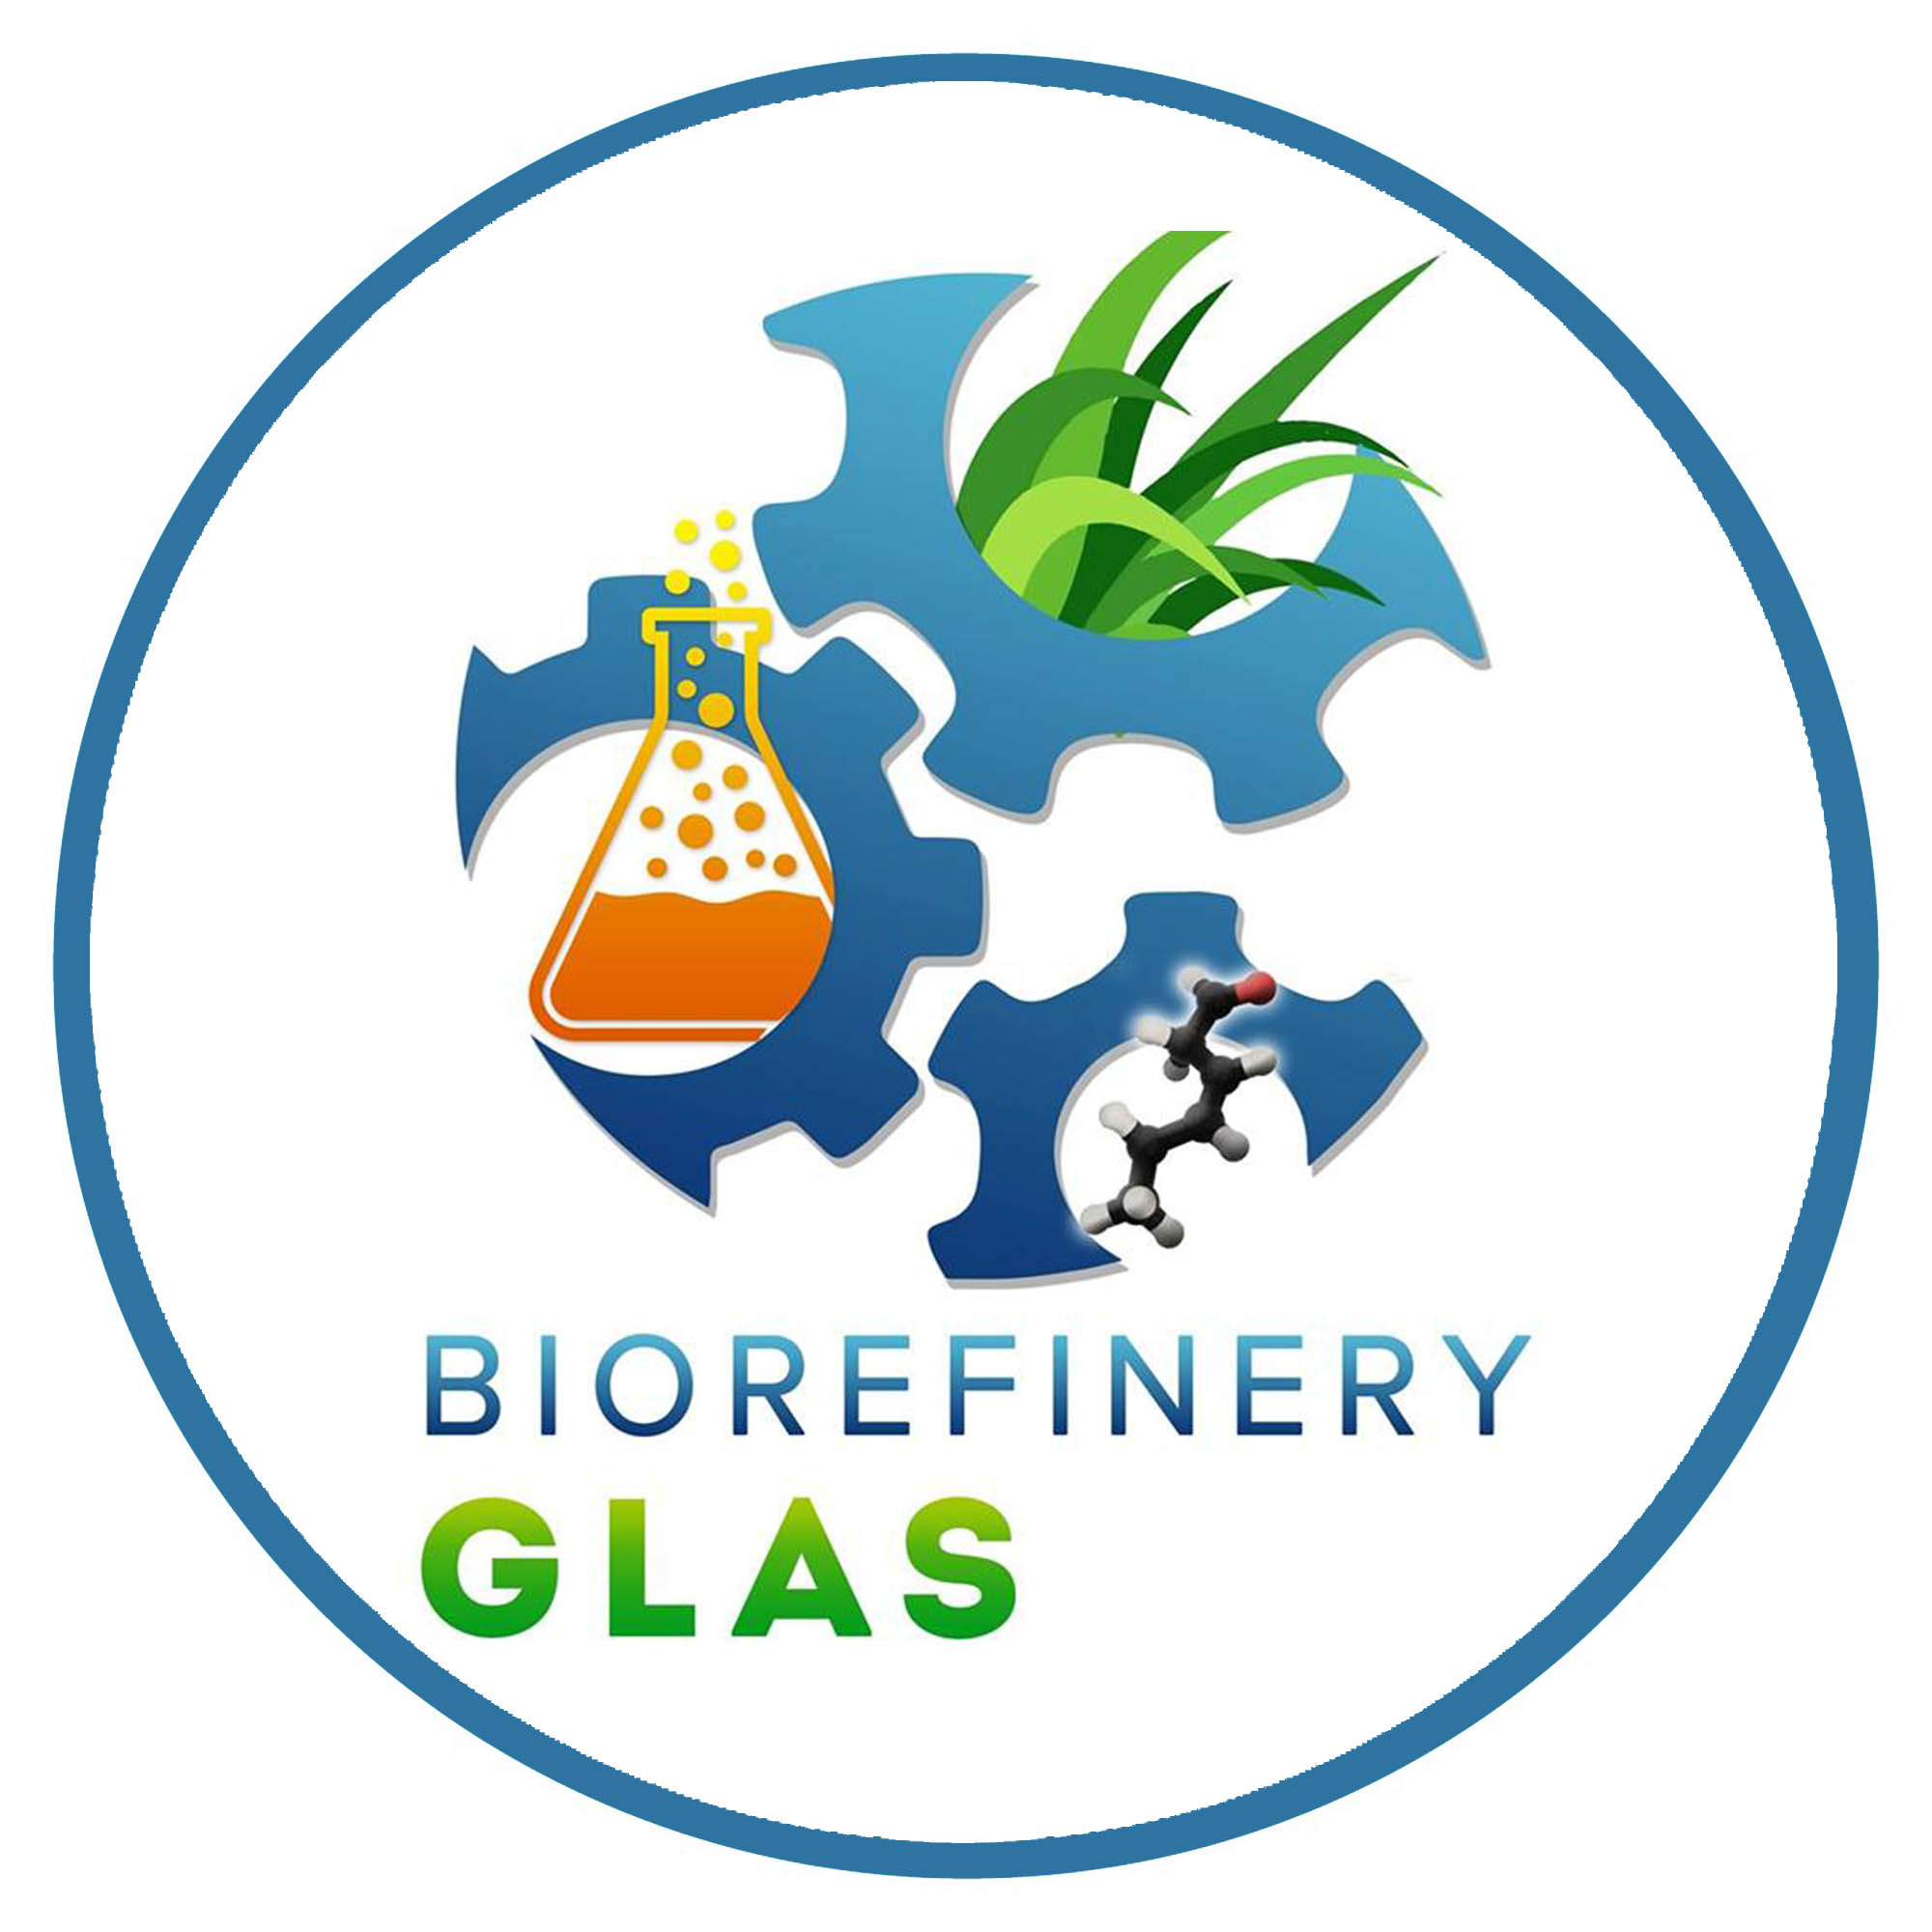 Biorefinery-Glas-Image-1